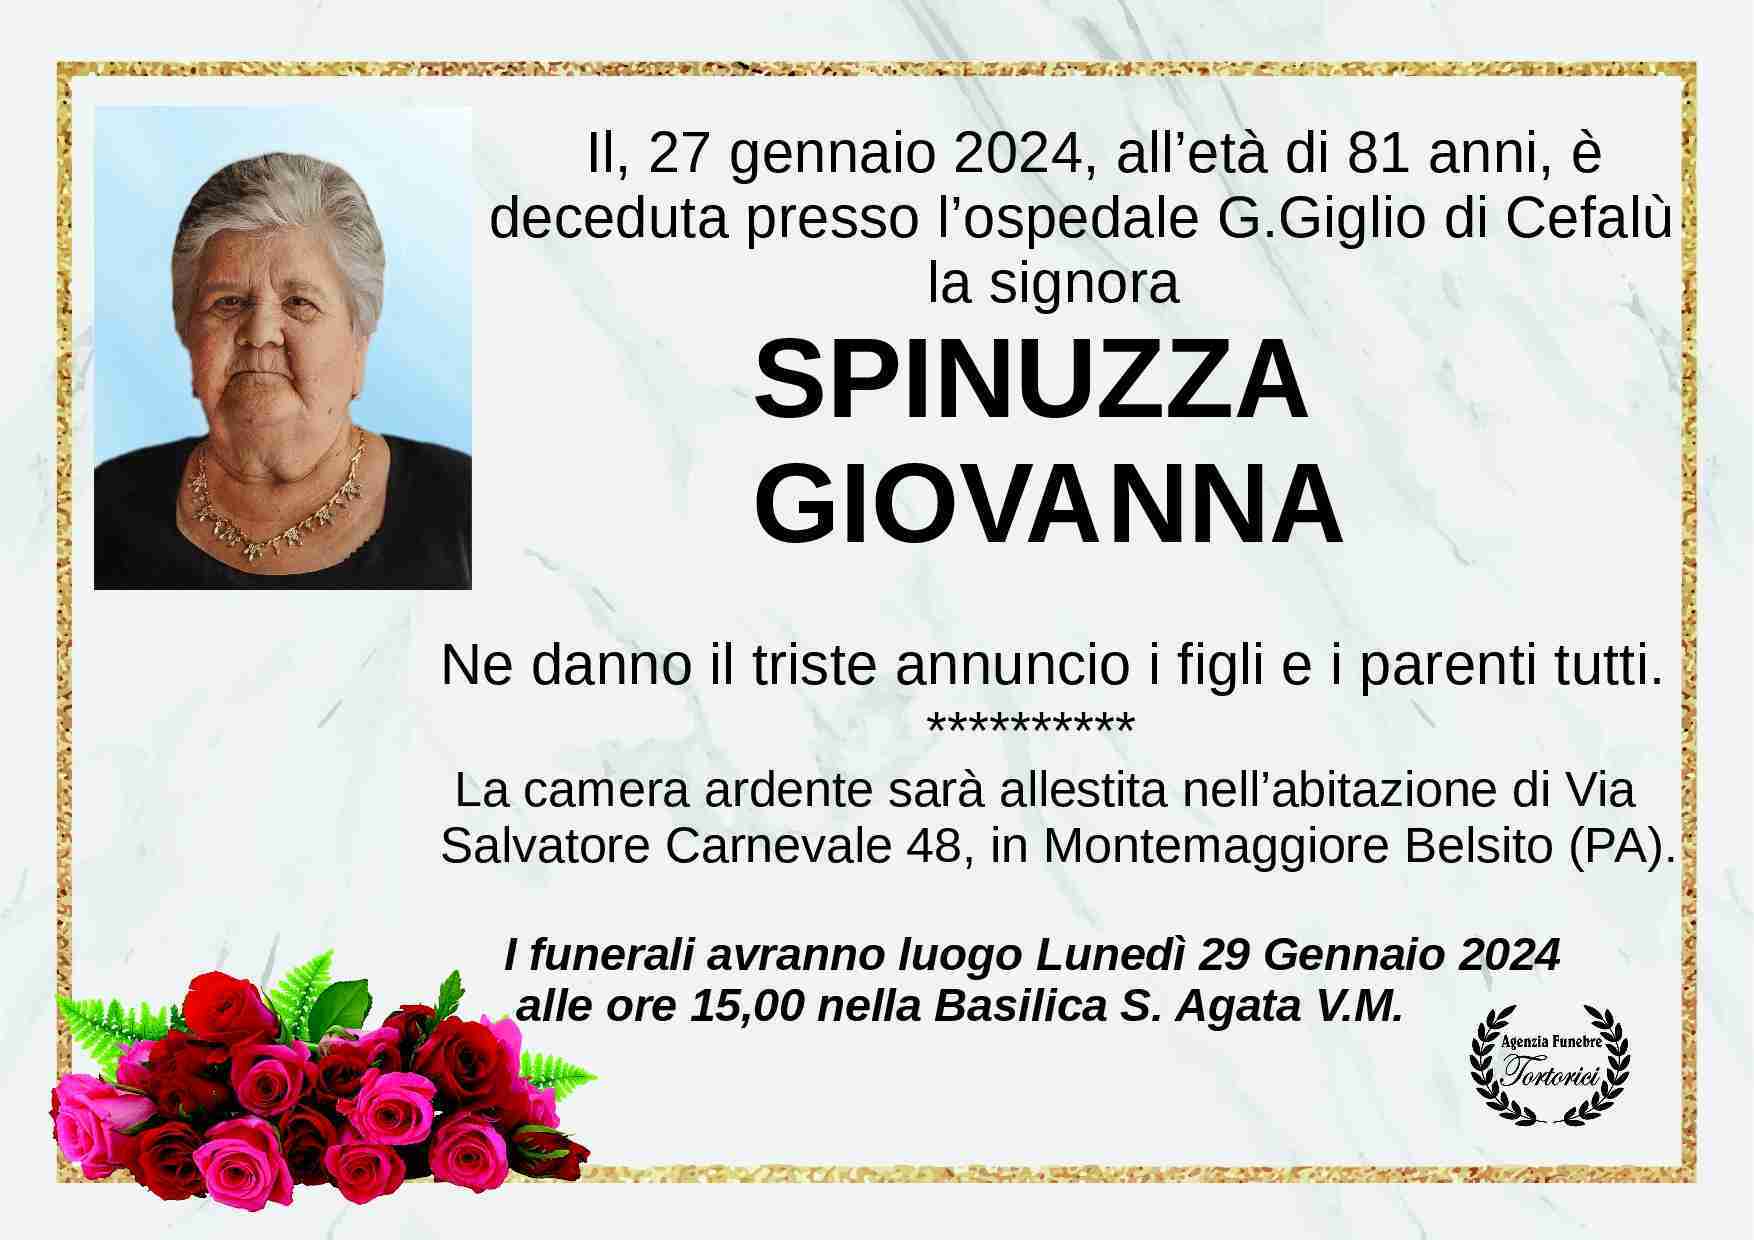 Spinuzza Giovanna